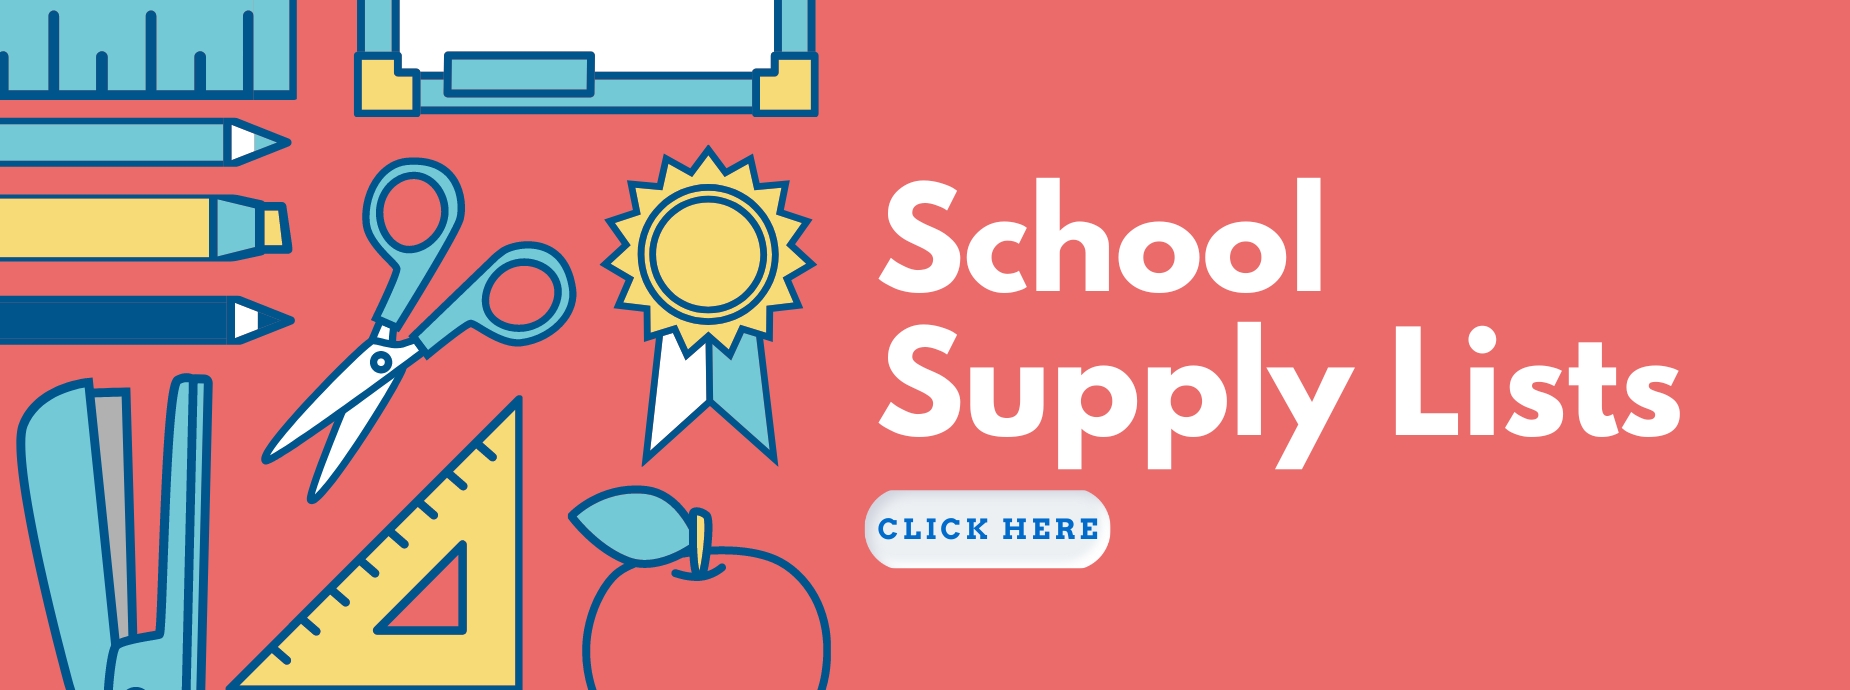 School Supply ListBanner banner